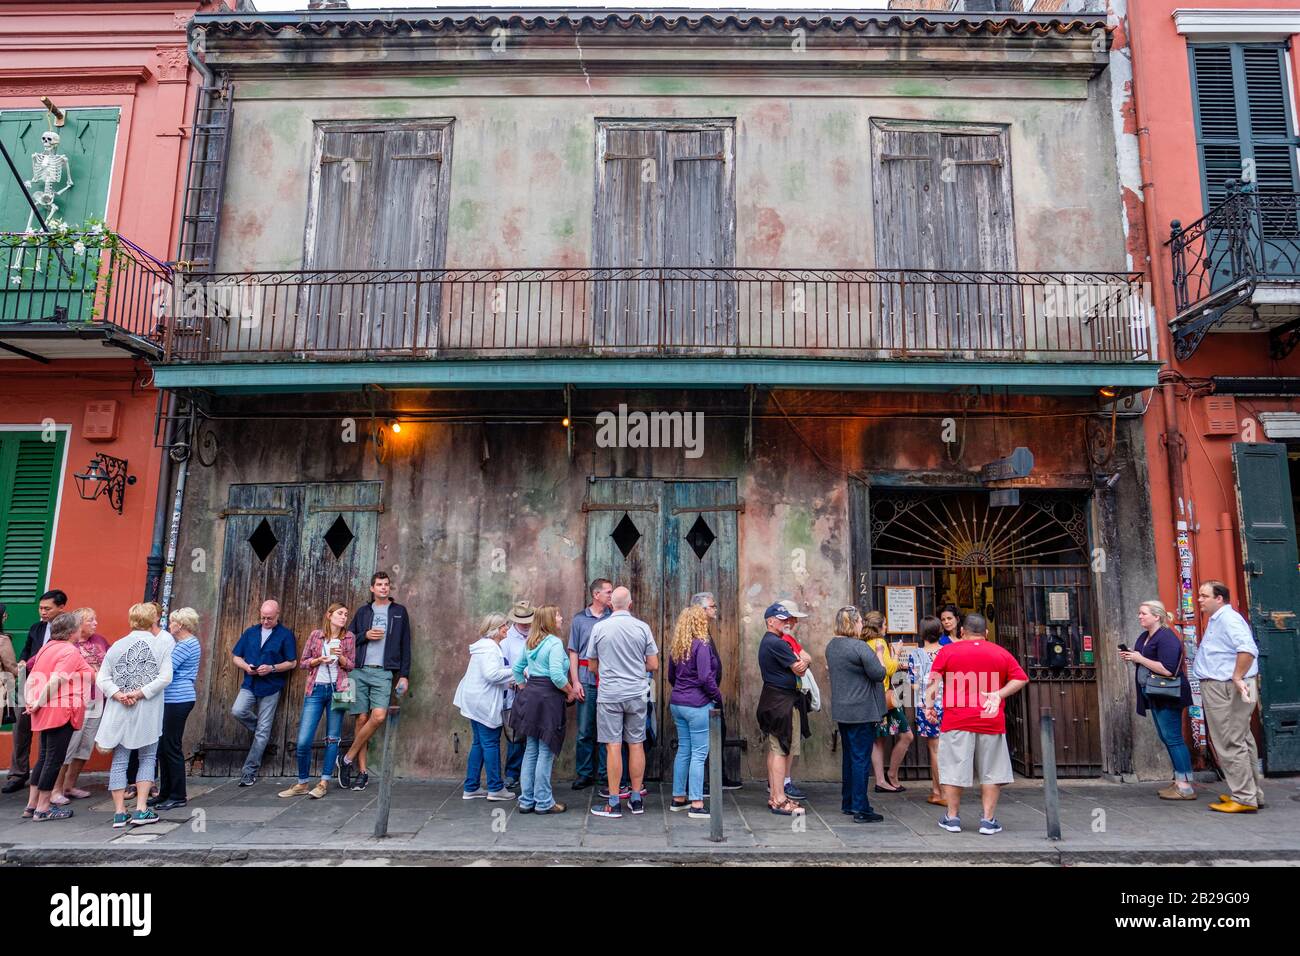 Le persone in attesa in linea fuori Preservation Hall jazz music venue, New Orleans, Louisiana, Stati Uniti d'America Foto Stock